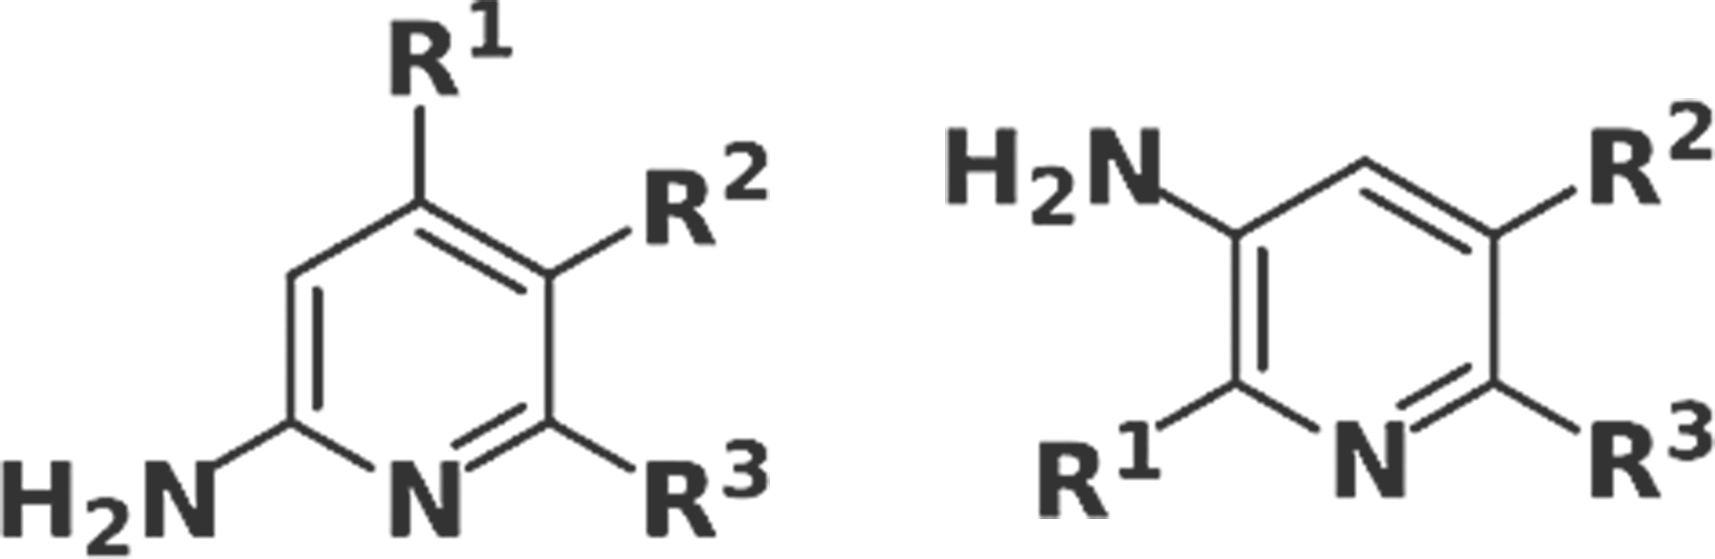 アミノピリジン誘導体の合成